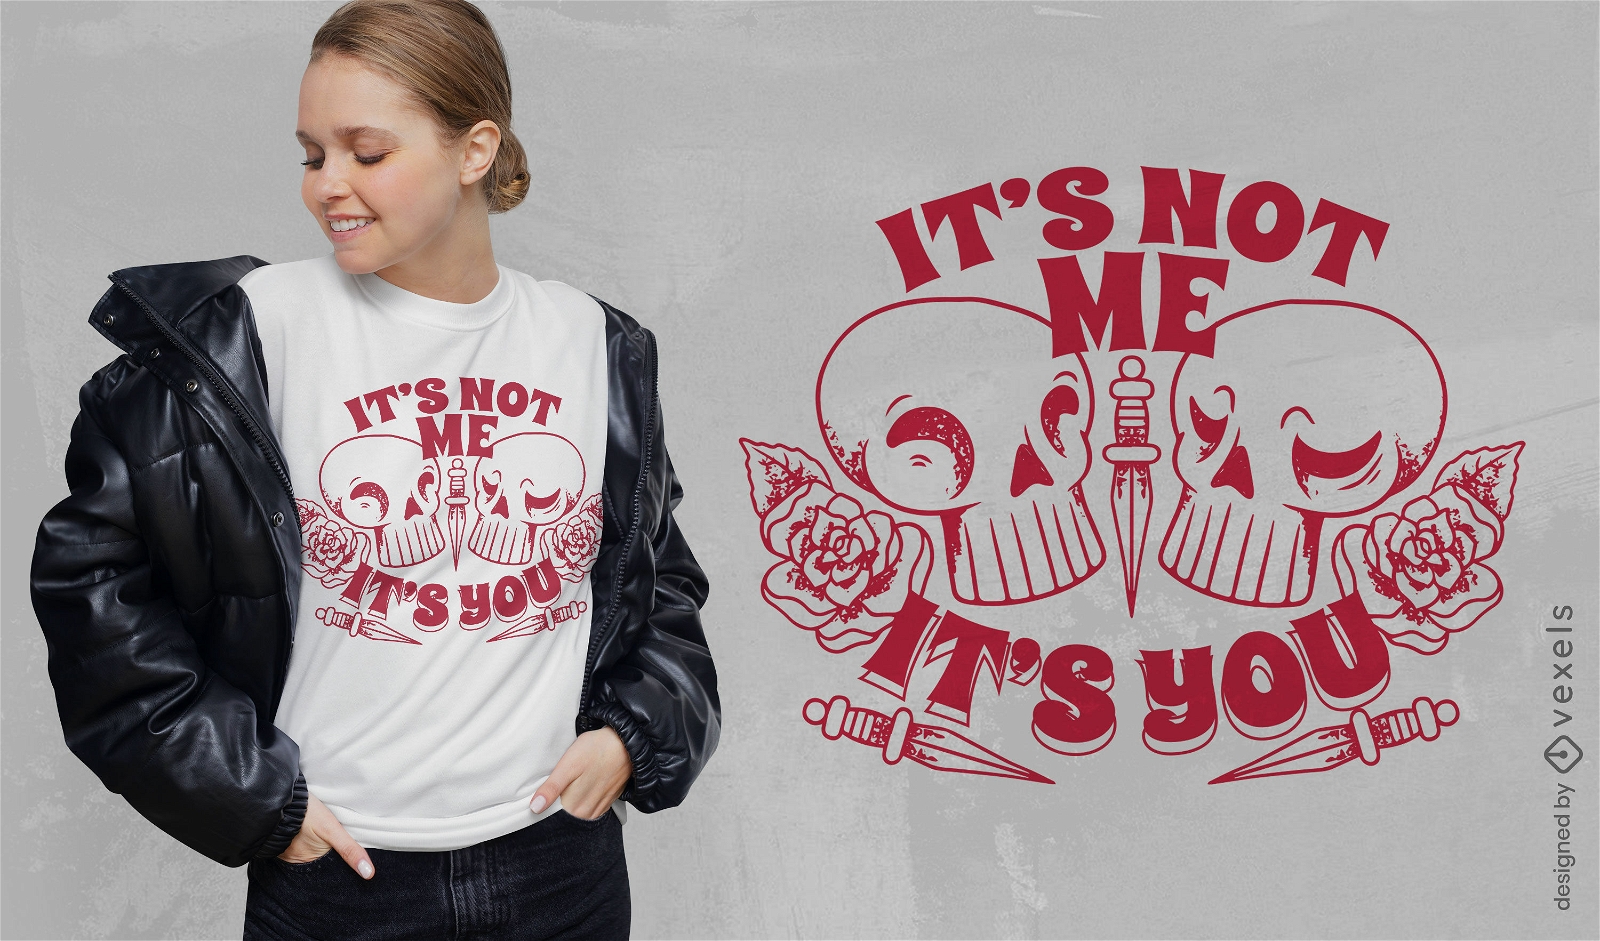 Anti-Valentinstag-Schädel-T-Shirt-Design